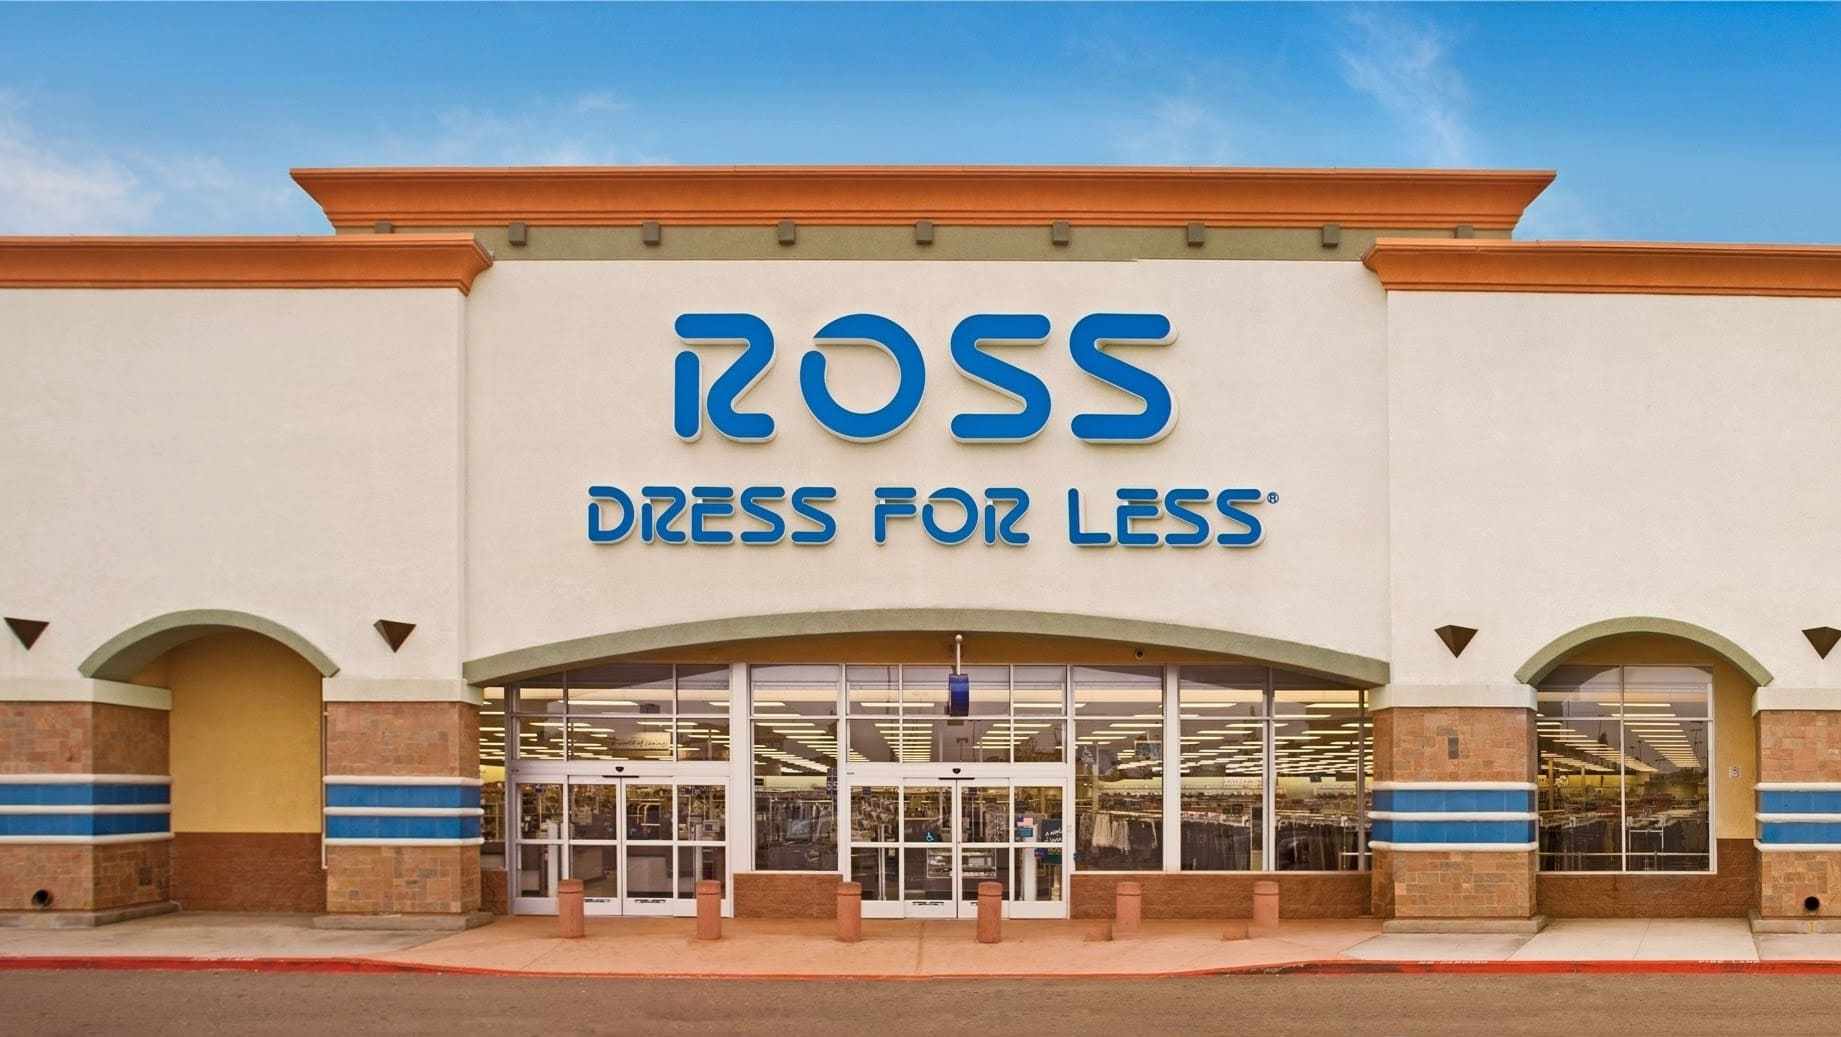 Ross Dress for Less - Davenport (FL 33837), US, pink coat